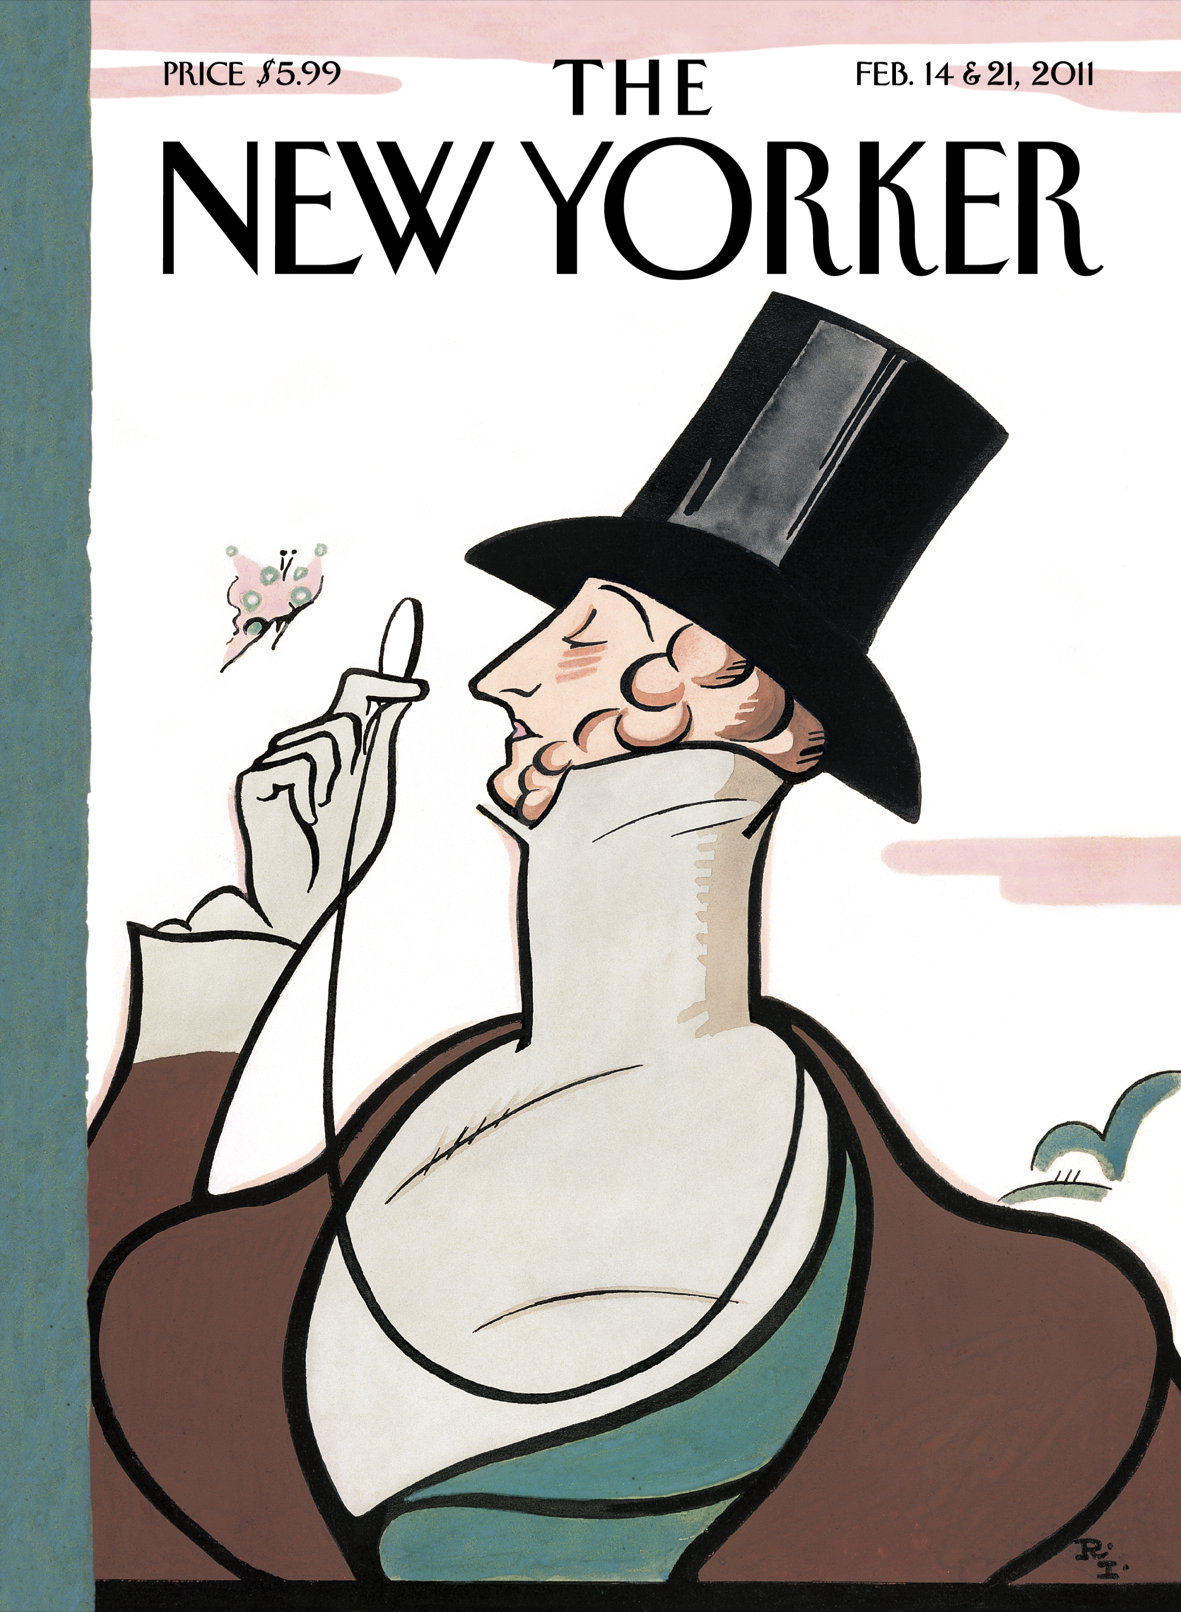 New Yorker cover.jpg